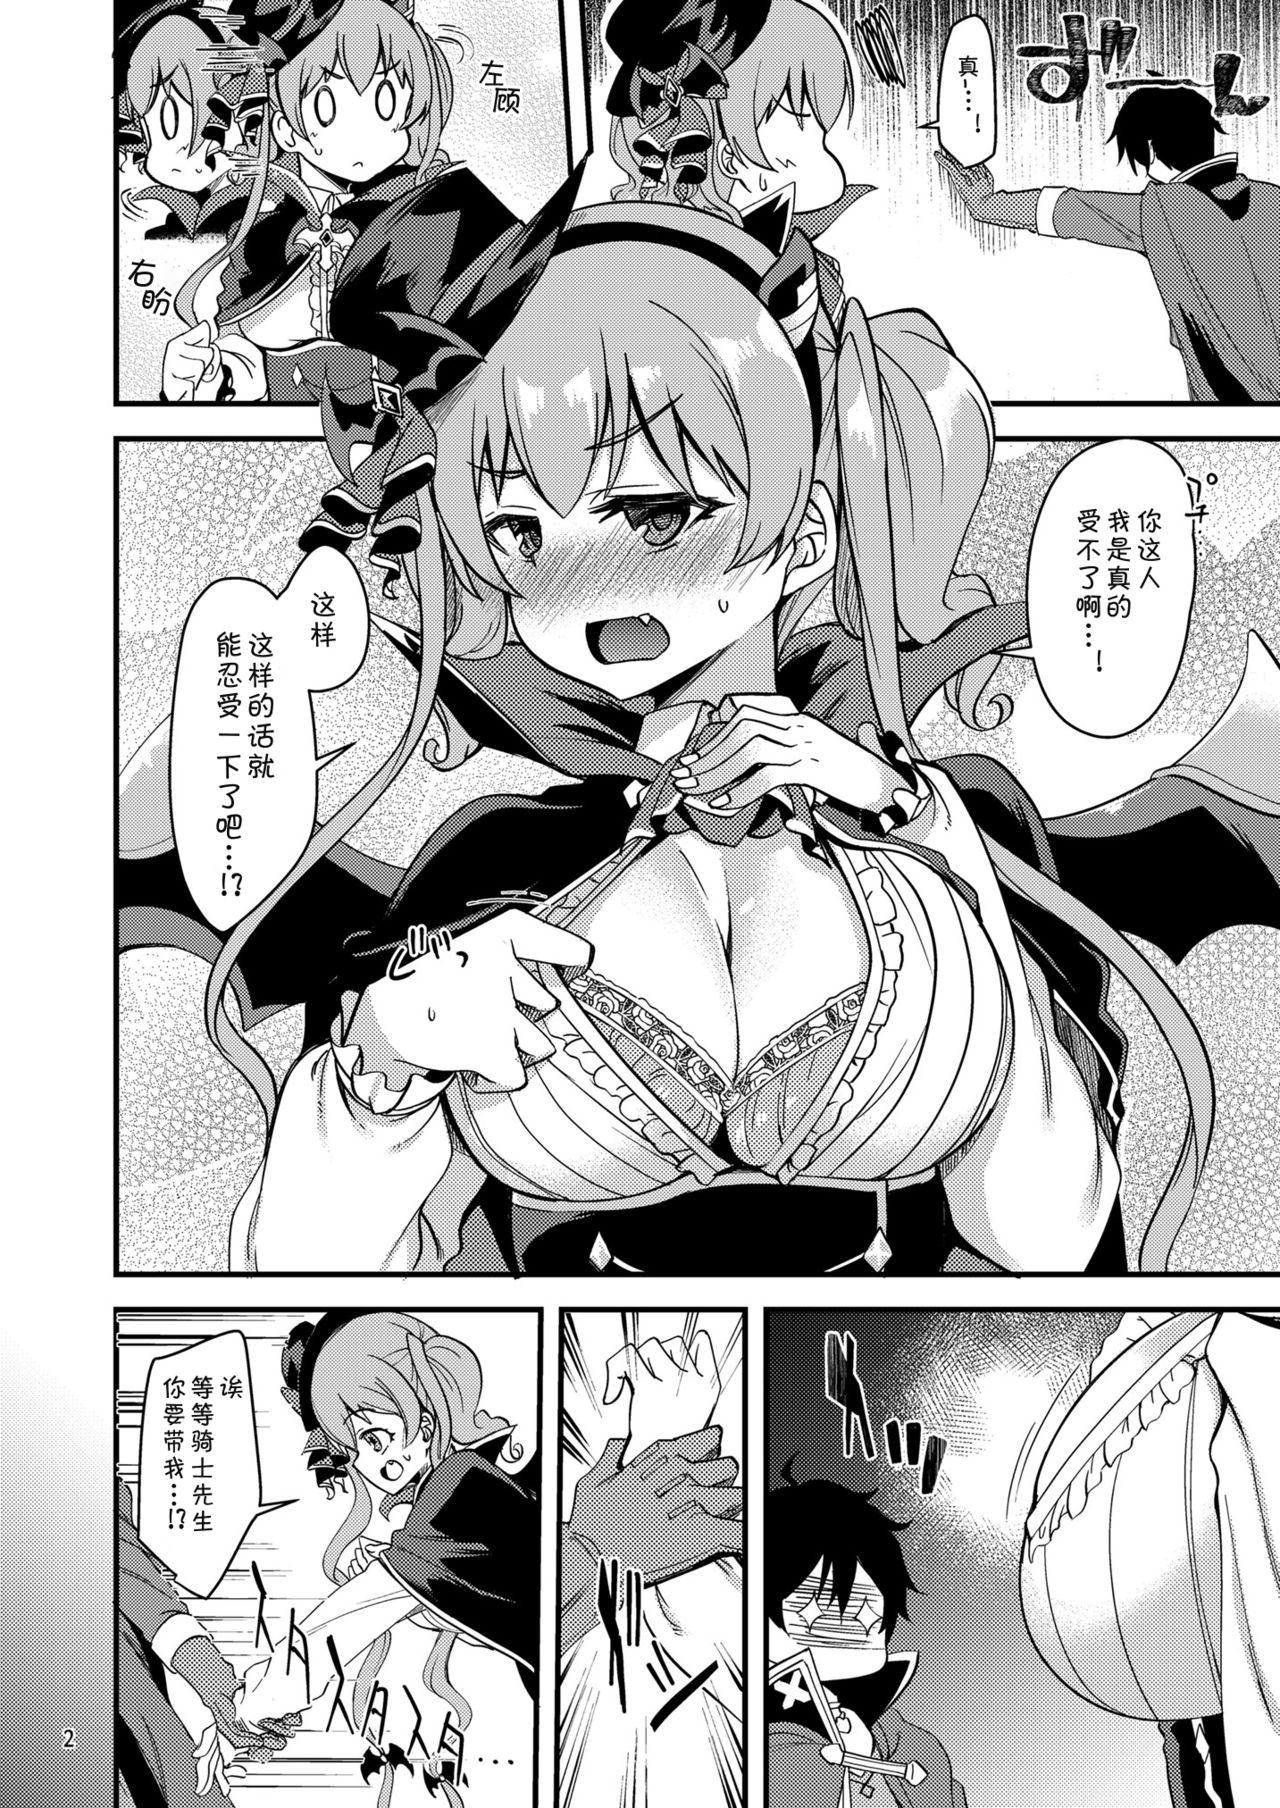 Swallowing Tsumugi Make Heroine Move!! 05 - Princess connect Big Dicks - Page 3